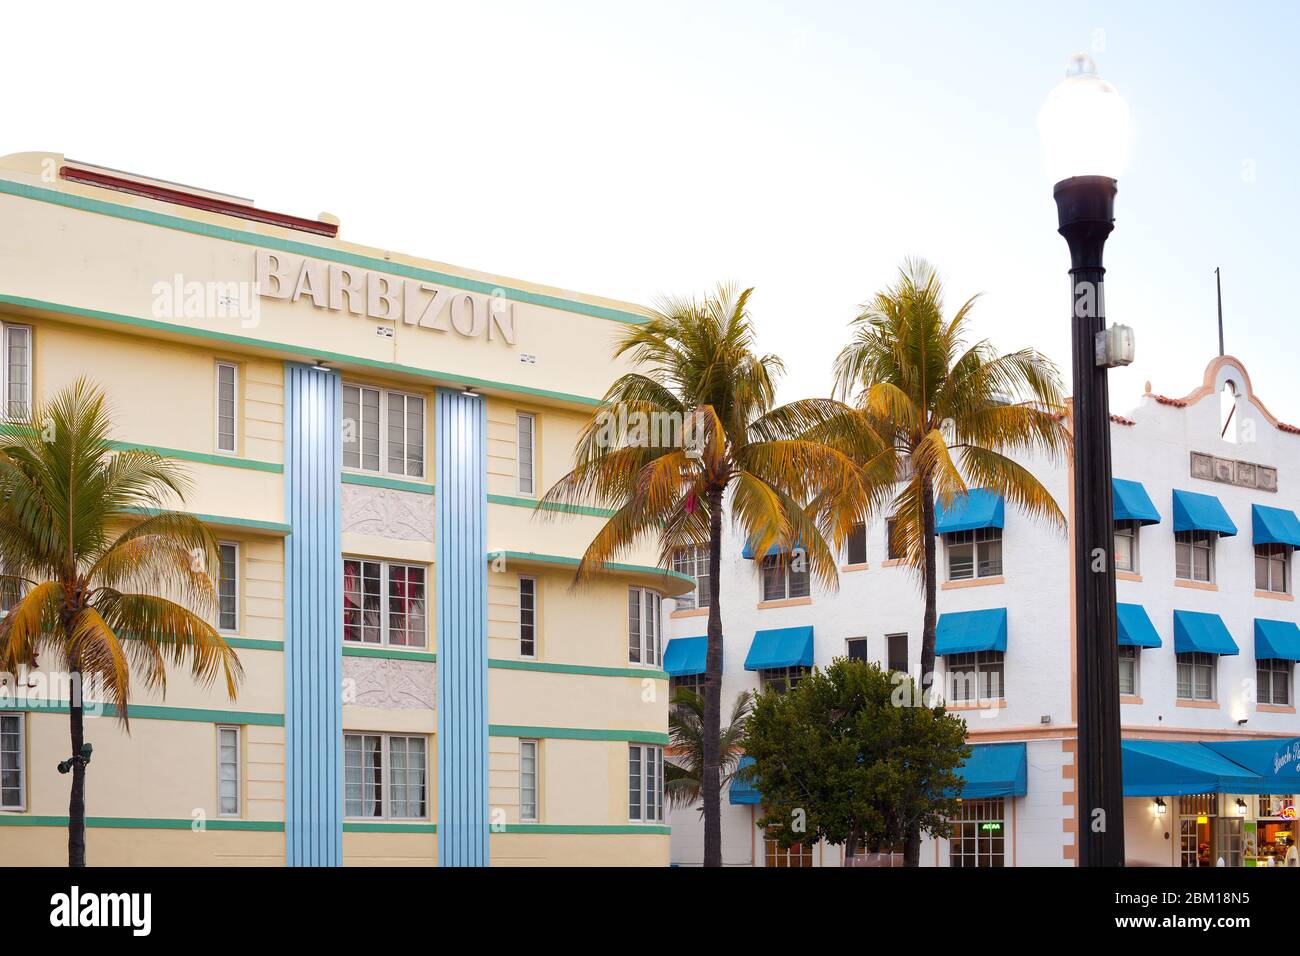 South Beach, Miami, Floride, États-Unis - édifices Art déco situés à Ocean Drive, dans le quartier Art déco de South Beach. Banque D'Images